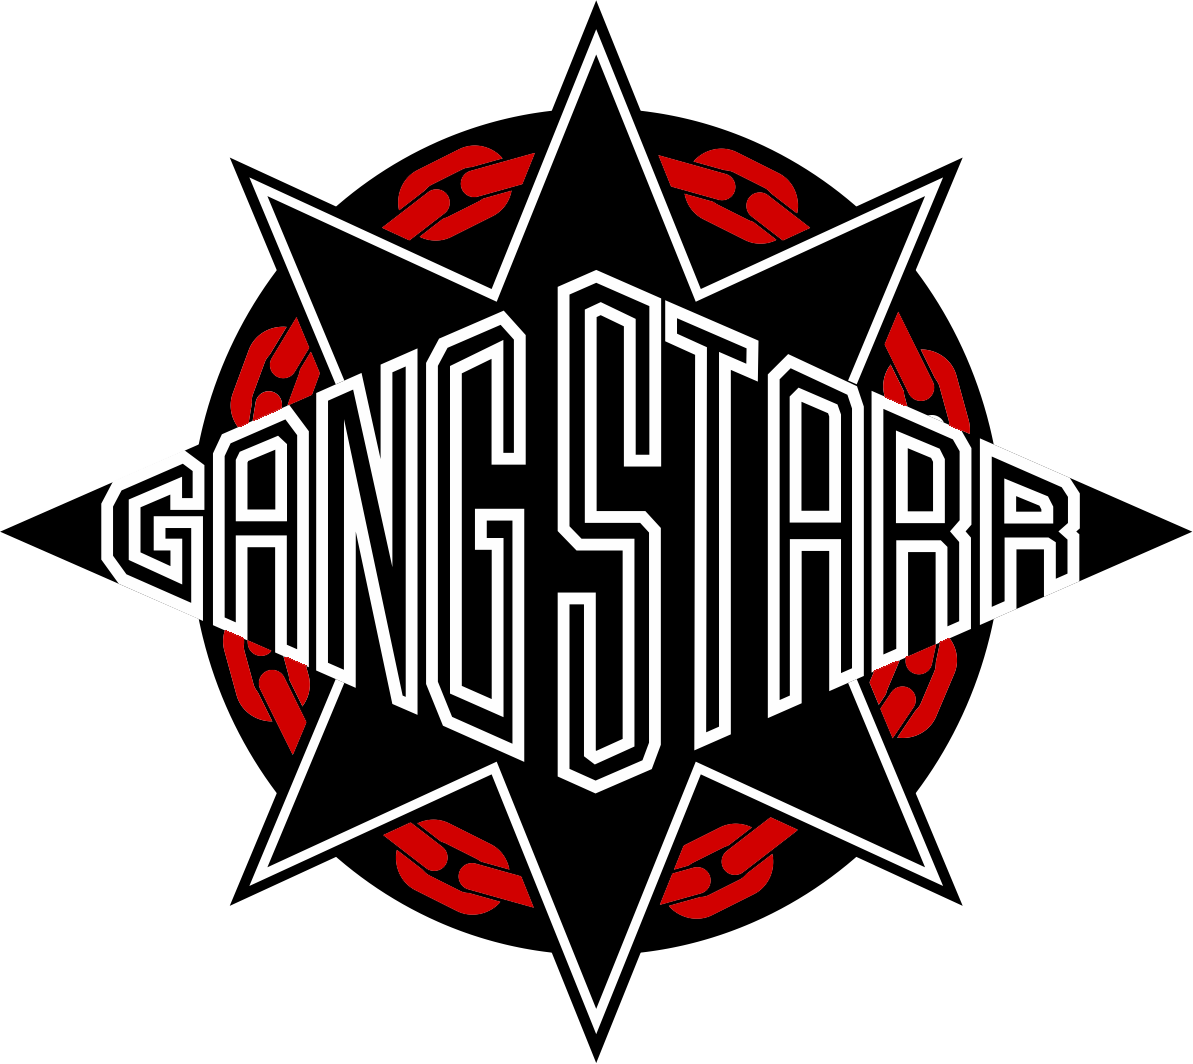 Gang Starr Forever